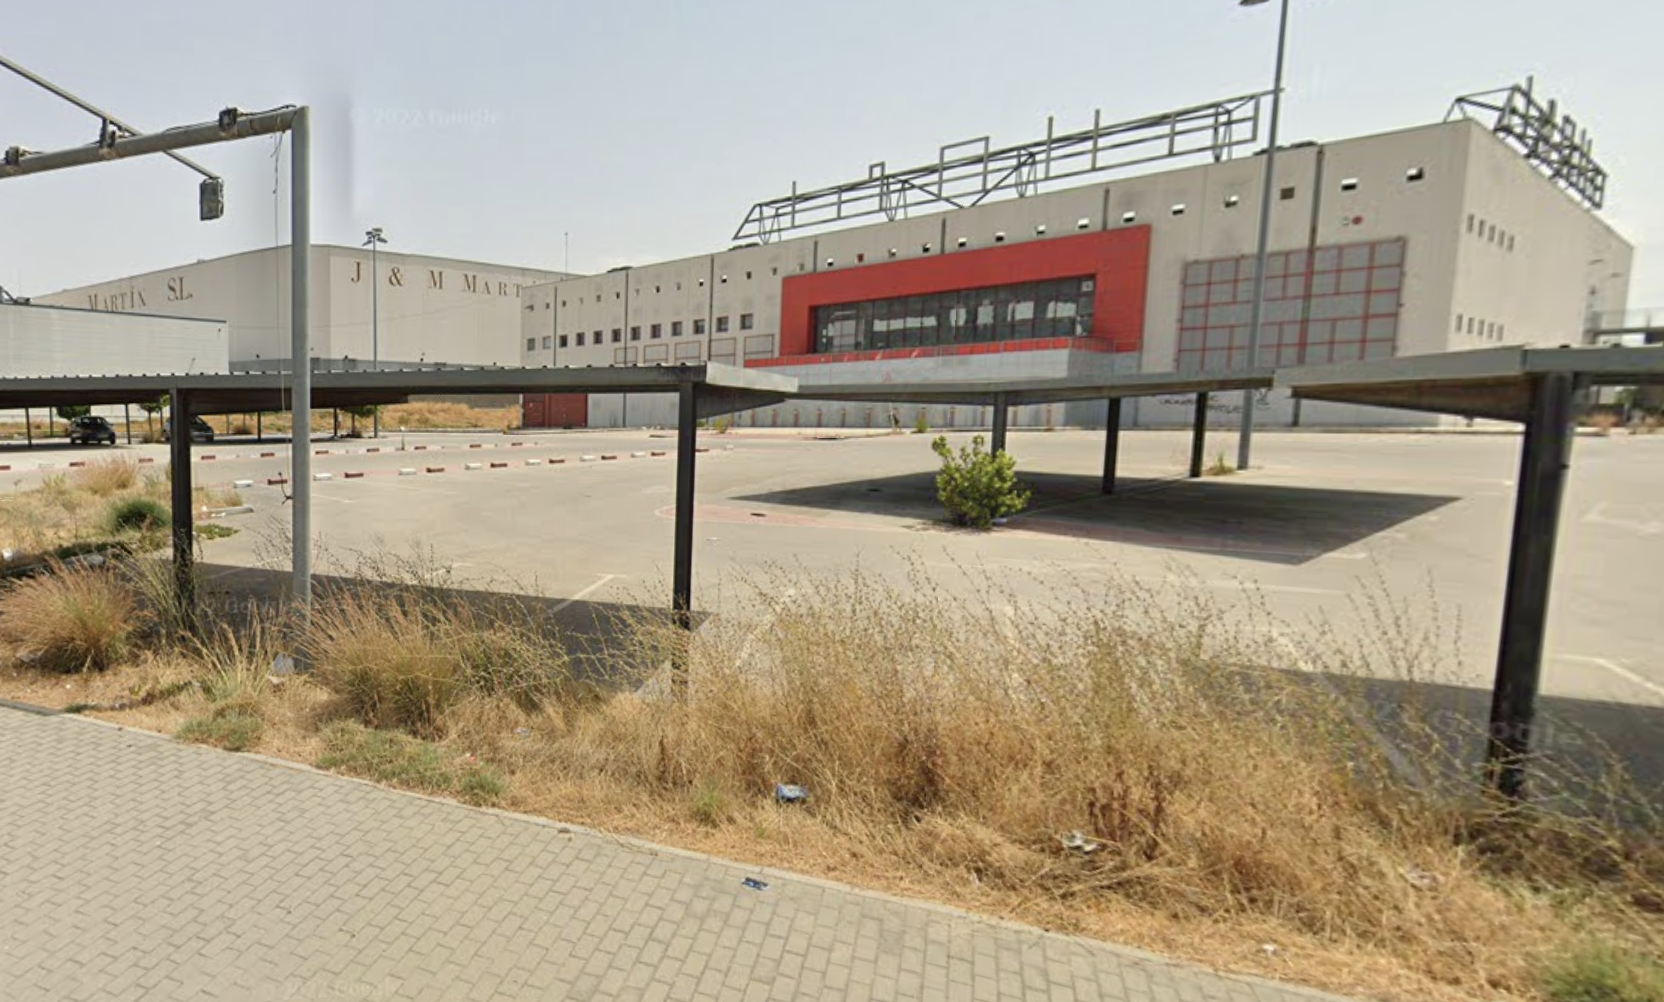 Antiguas instalaciones de Media-Markt, en el torno de Guadabajaque, en el acceso sur de Jerez, donde se ubicará el nuevo Mercadona, en una imagen de Google Maps.